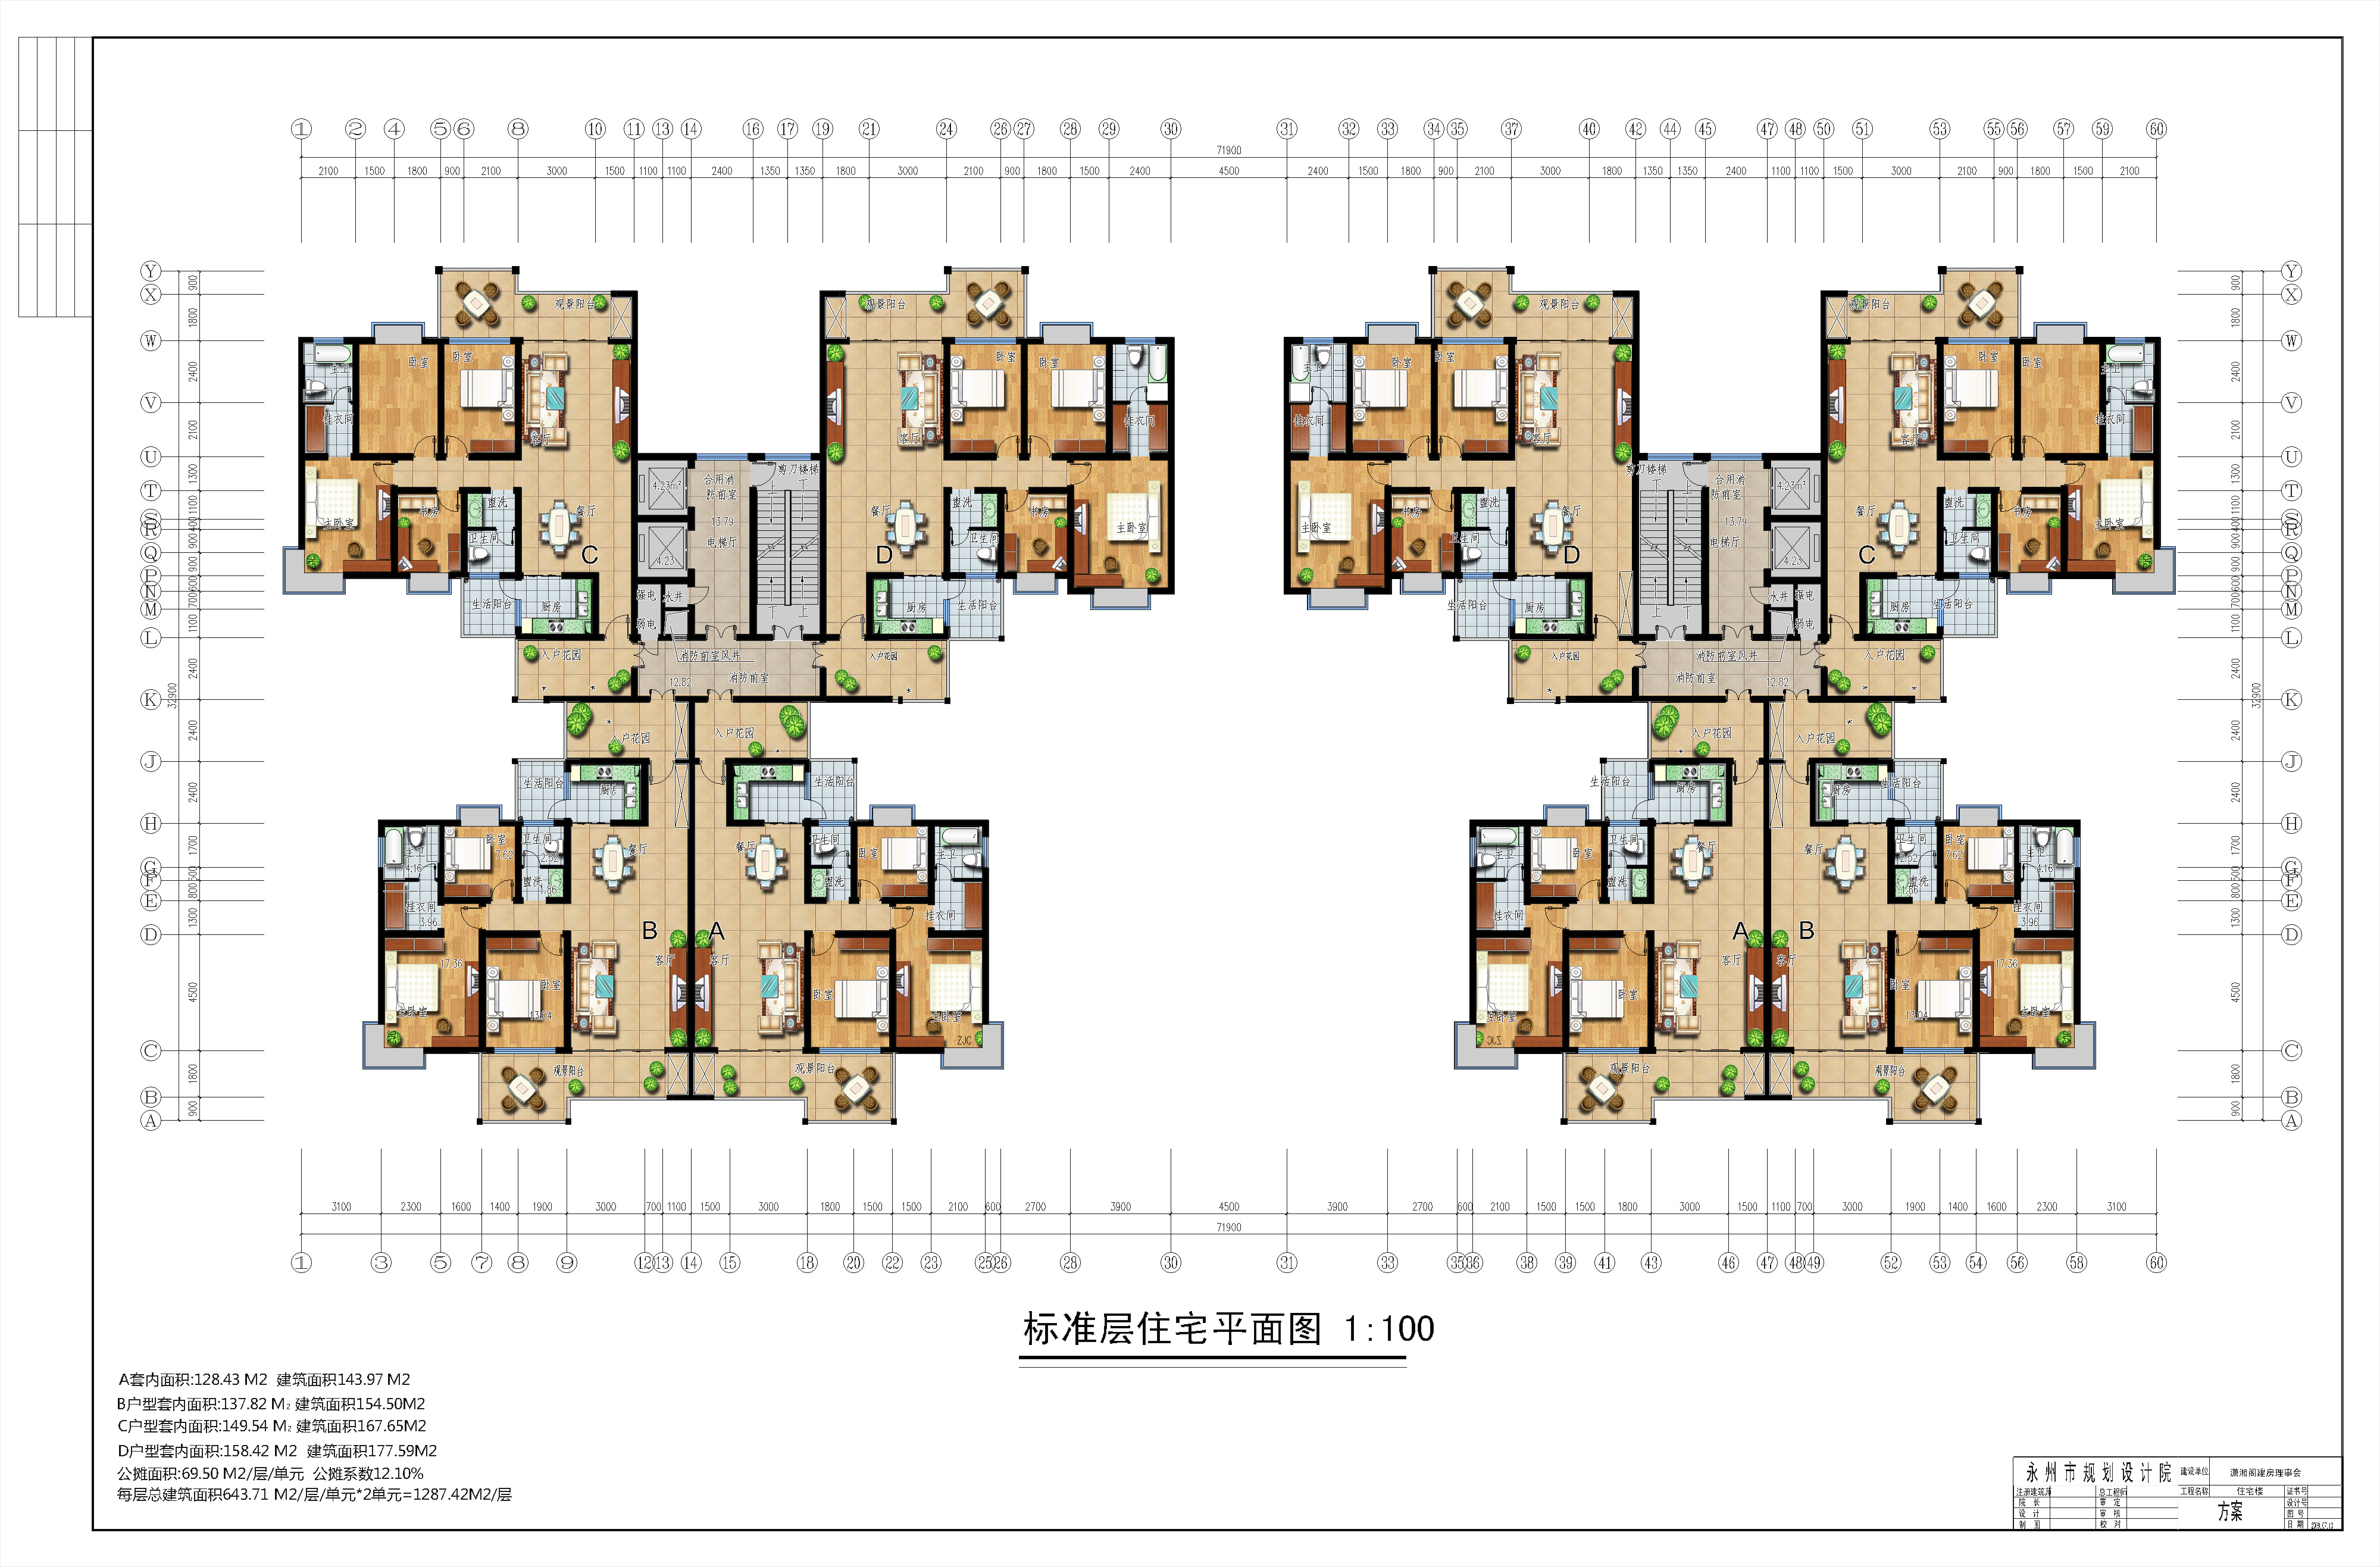 高层建筑住宅方案彩平_CO土木在线图纸下载